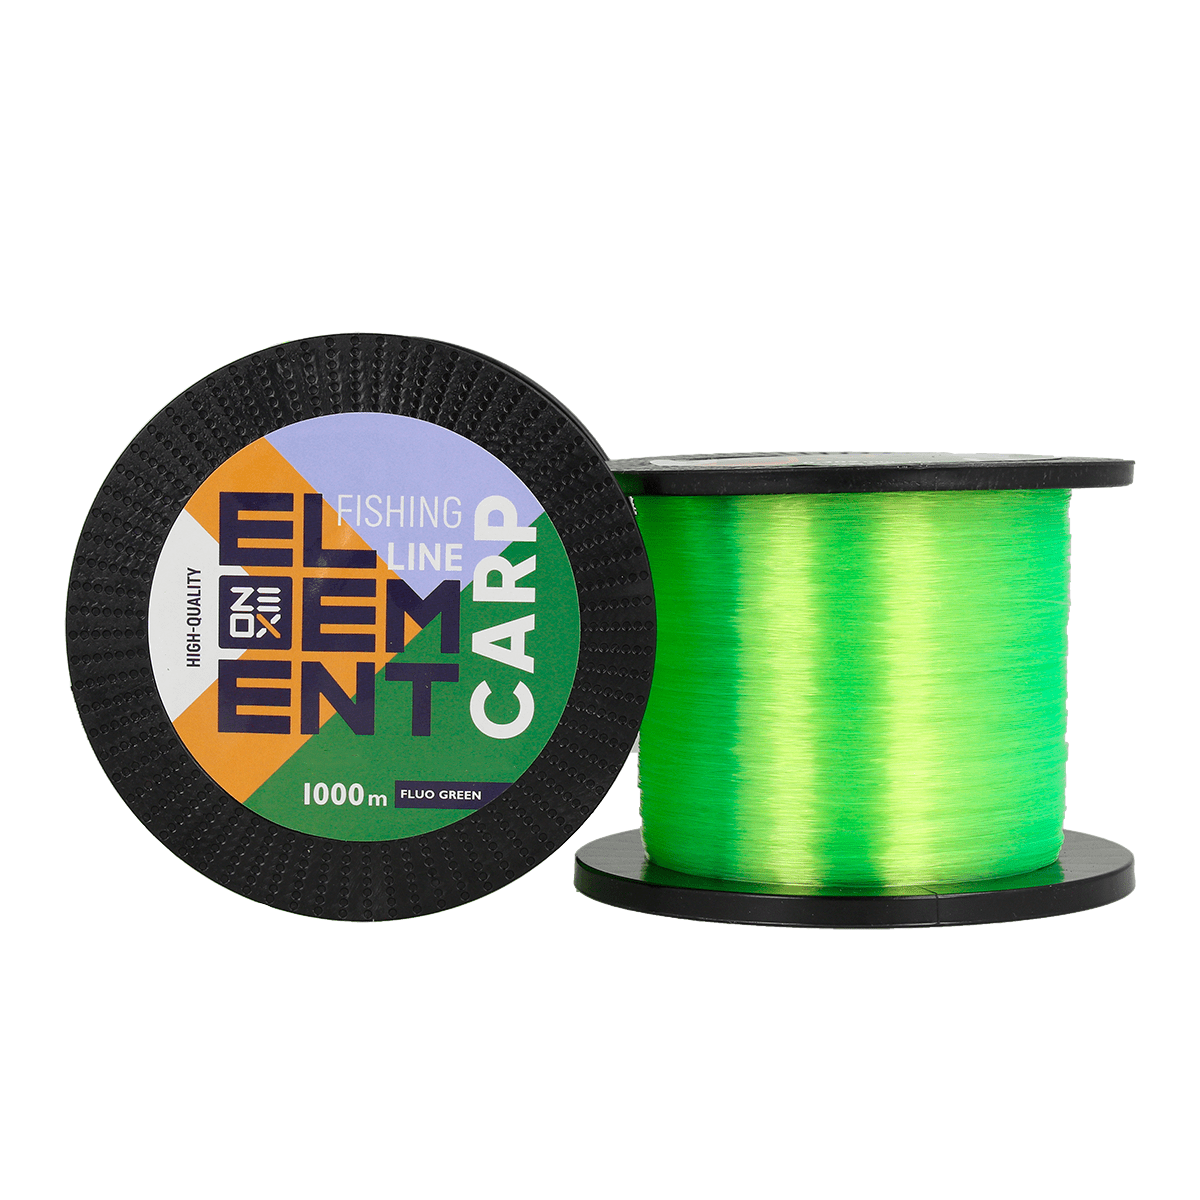 ZEOX Nylon Line Element Carp 1000m Fluo Green